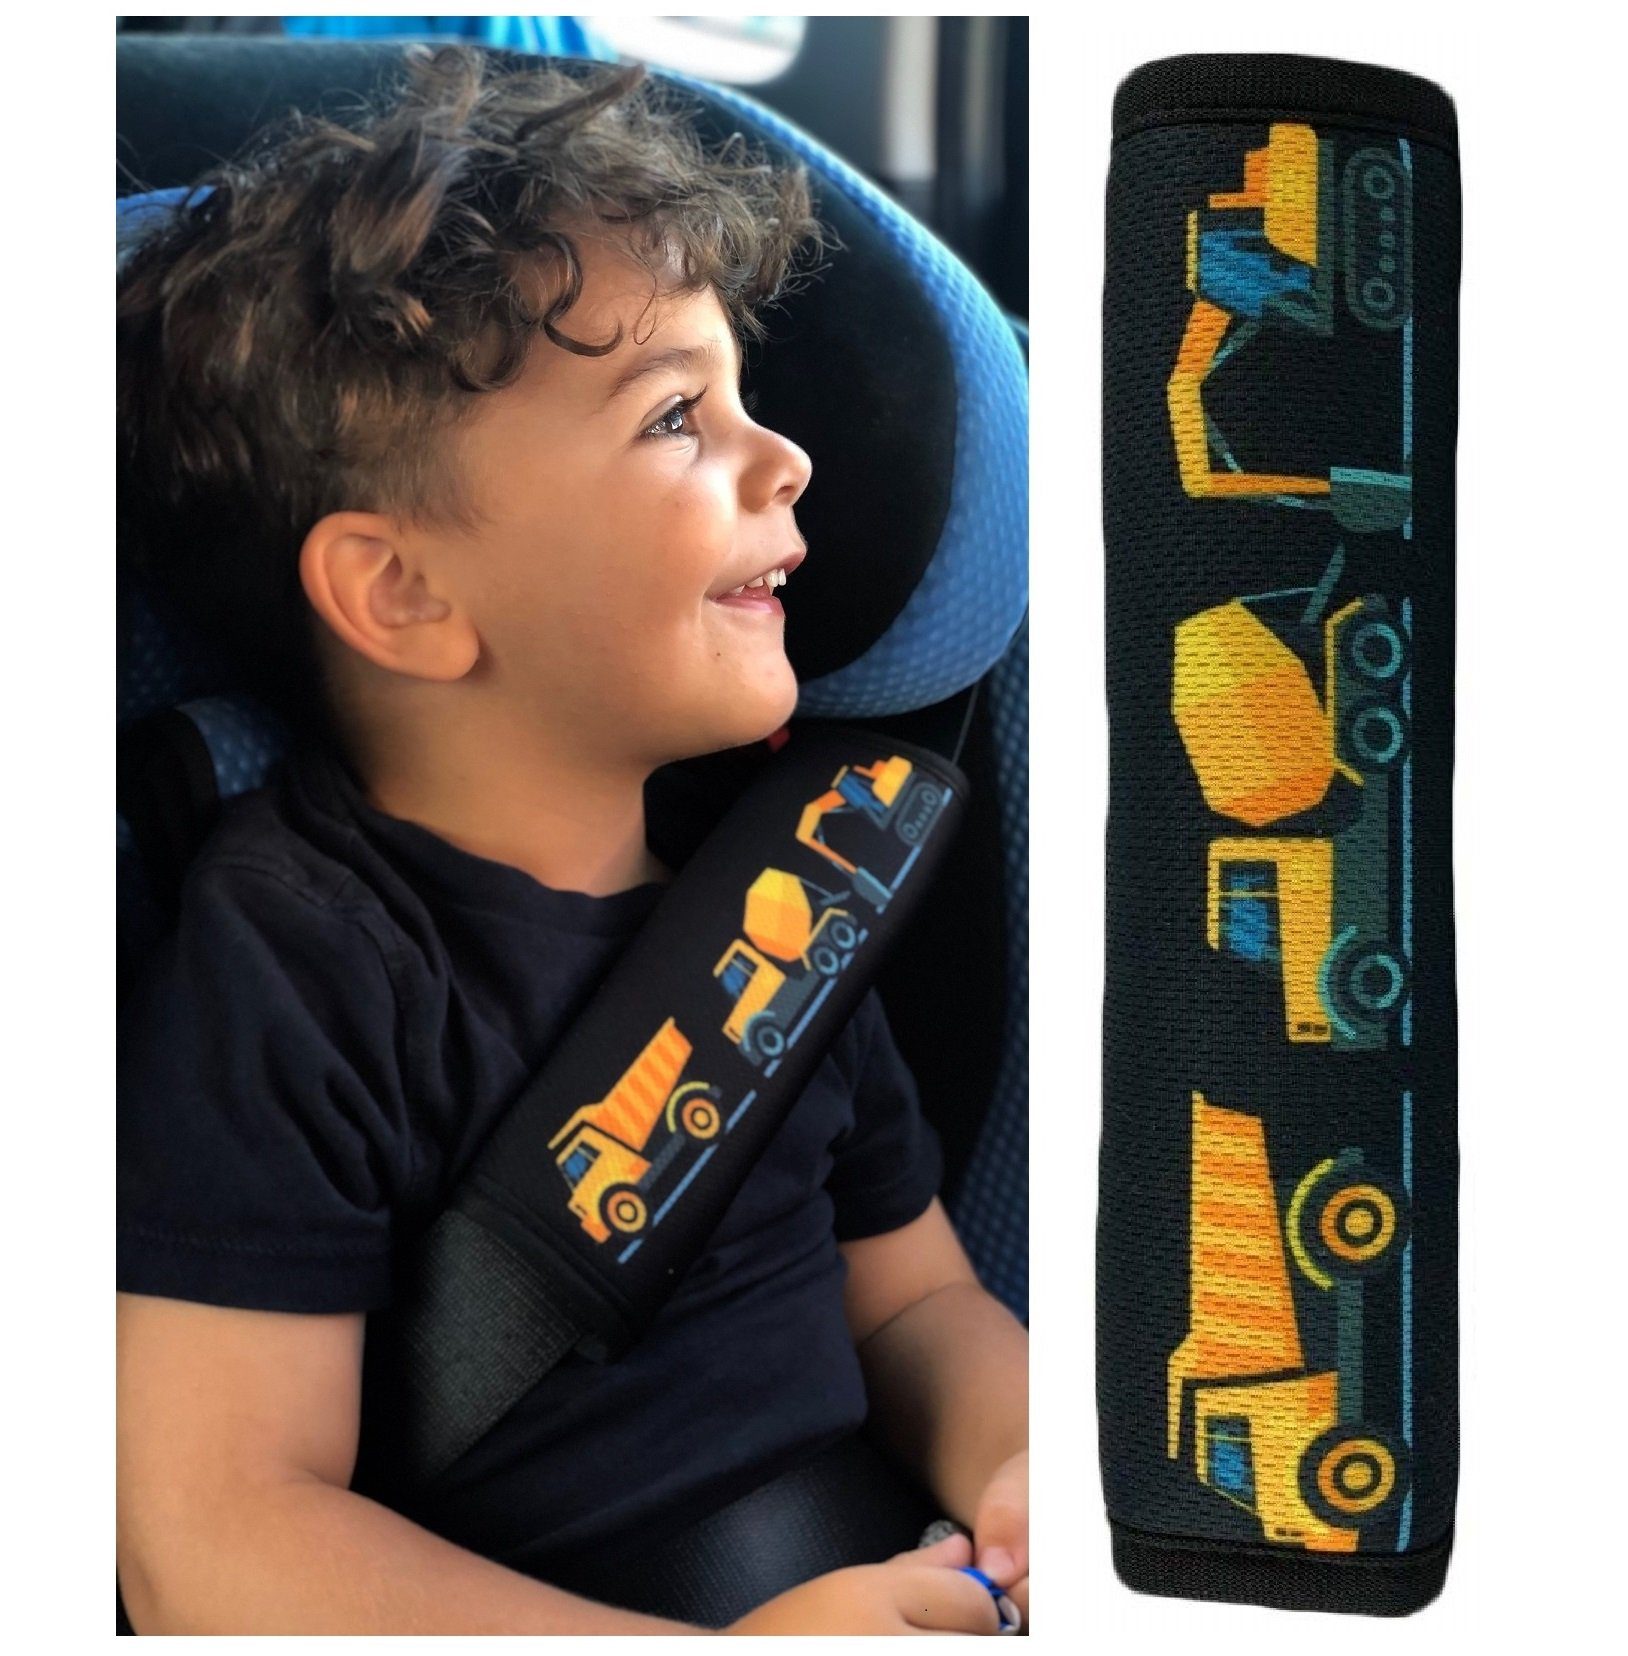 2x Autositz Auflage Schutzunterlage Schutzbezug Kindersitz Auto Baby  Sitzschutz